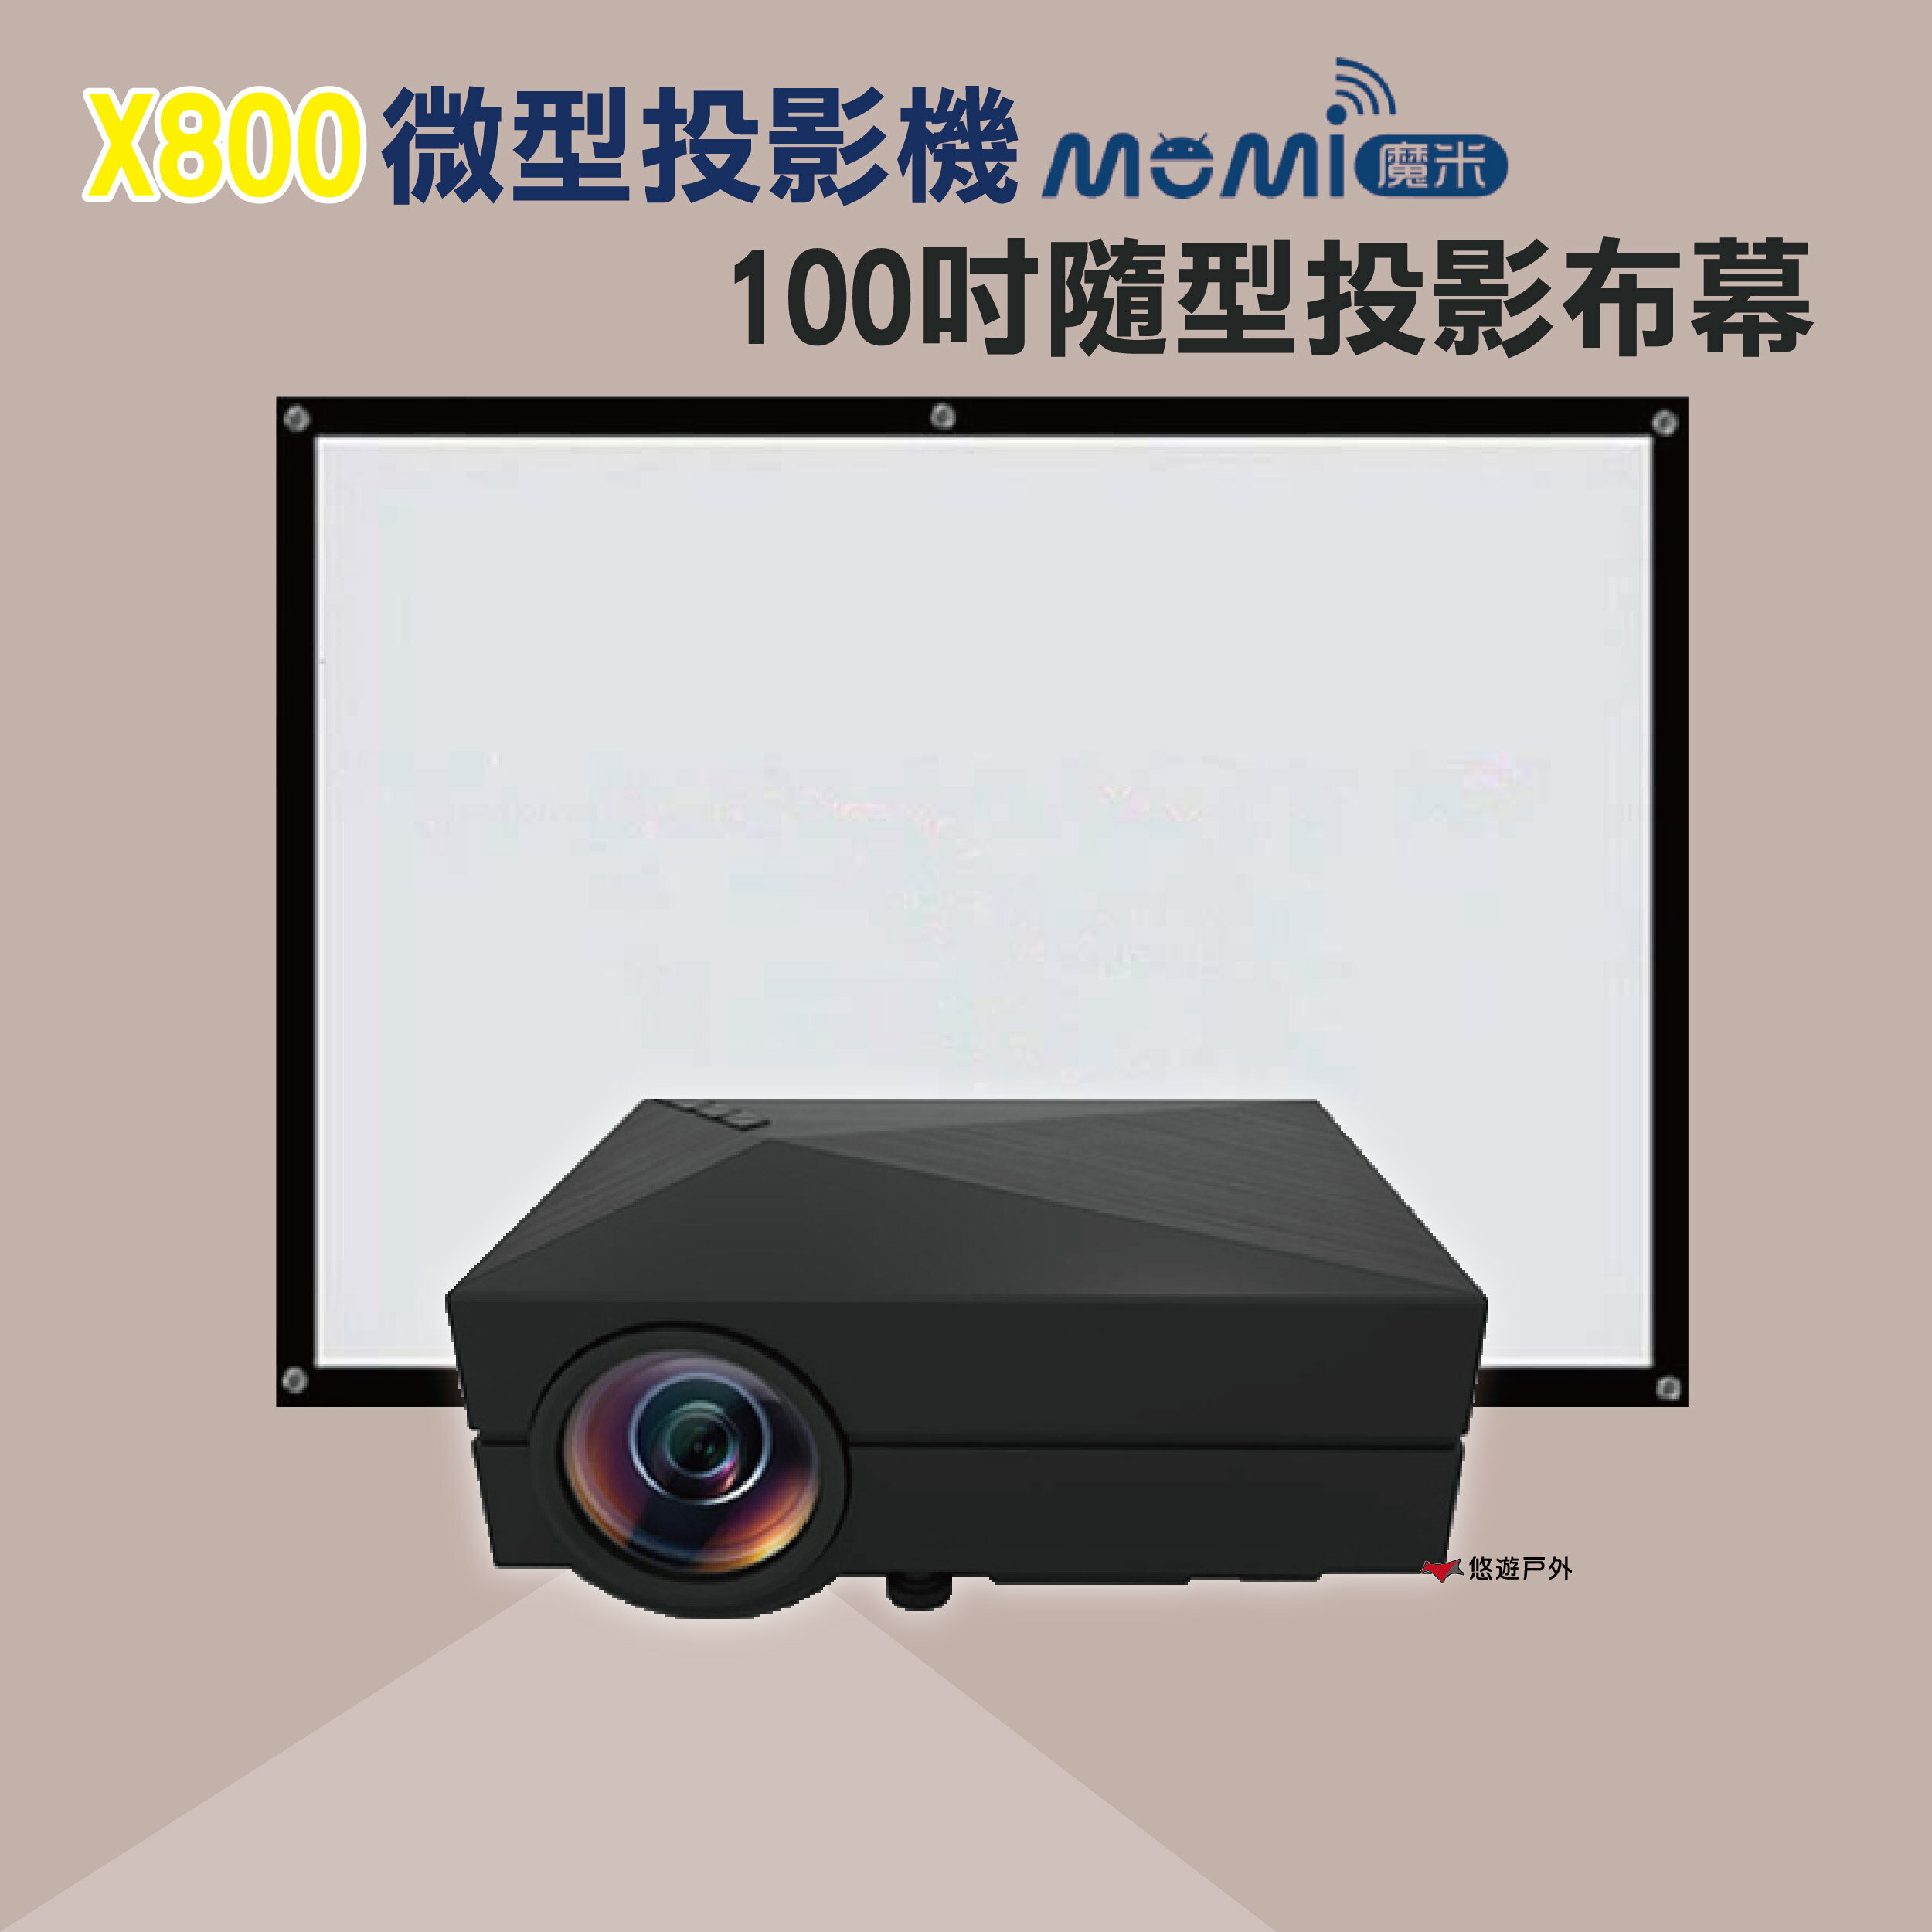 【領卷再享優惠】魔米X800投影機+100吋便攜投影布幕 居家 露營 登山 【悠遊戶外】